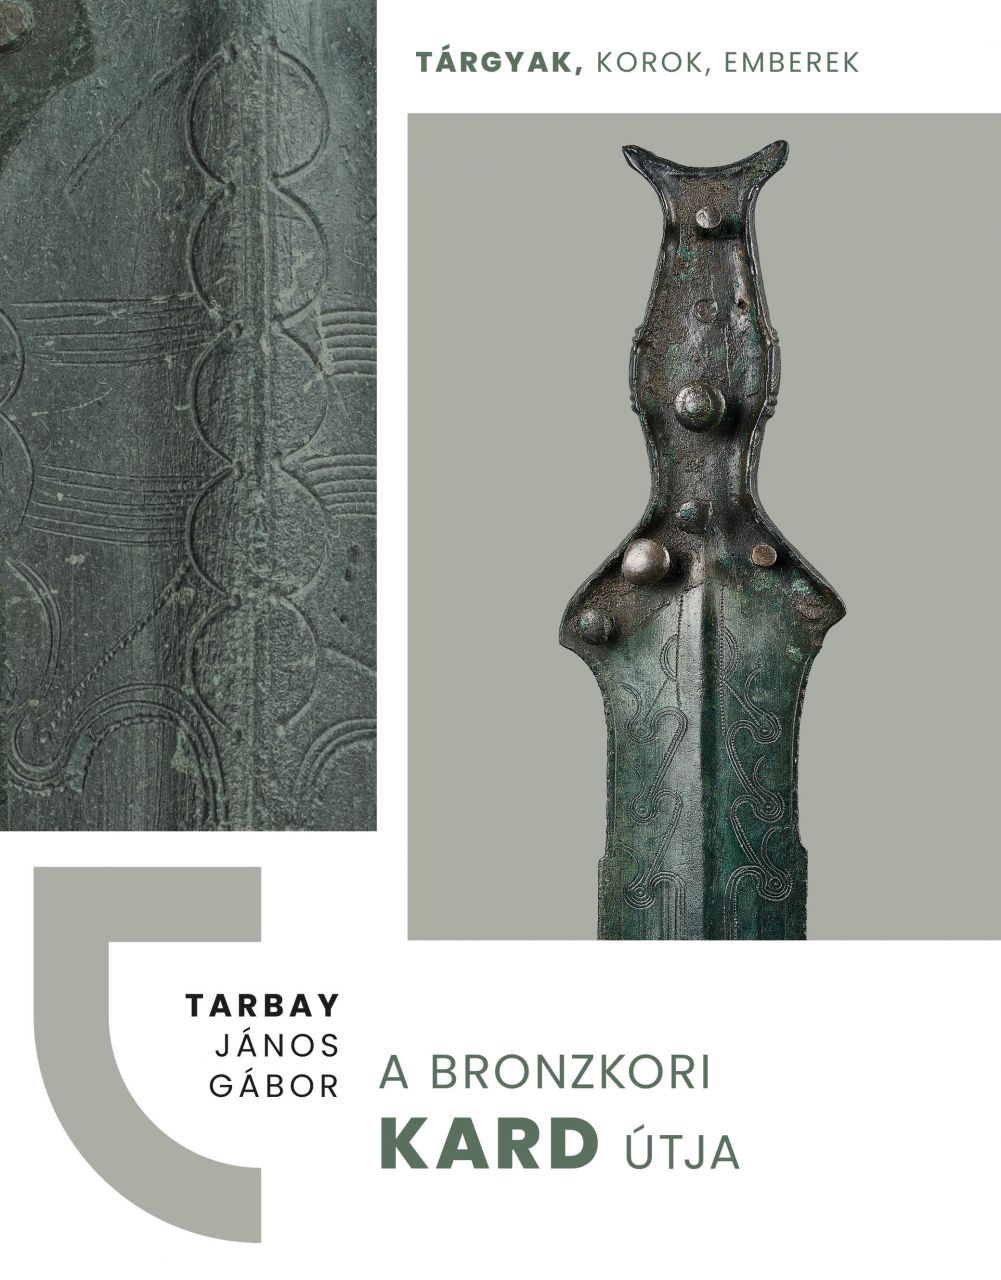 A bronzkori kard útja - tárgyak, korok, emberek